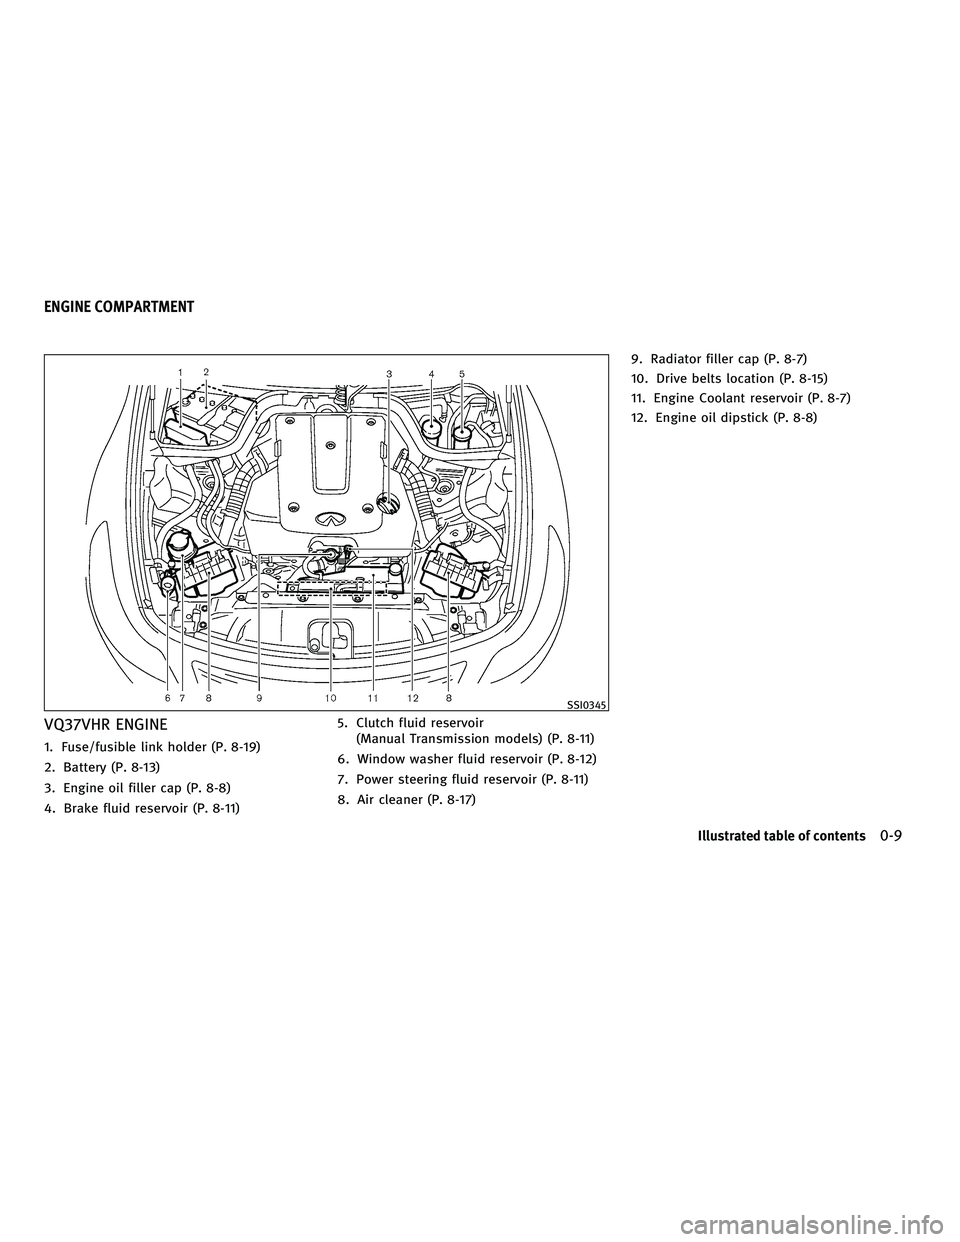 INFINITI G-CONVERTIBLE 2010 User Guide VQ37VHR ENGINE
1. Fuse/fusible link holder (P. 8-19)
2. Battery (P. 8-13)
3. Engine oil filler cap (P. 8-8)
4. Brake fluid reservoir (P. 8-11)5. Clutch fluid reservoir
(Manual Transmission models) (P.